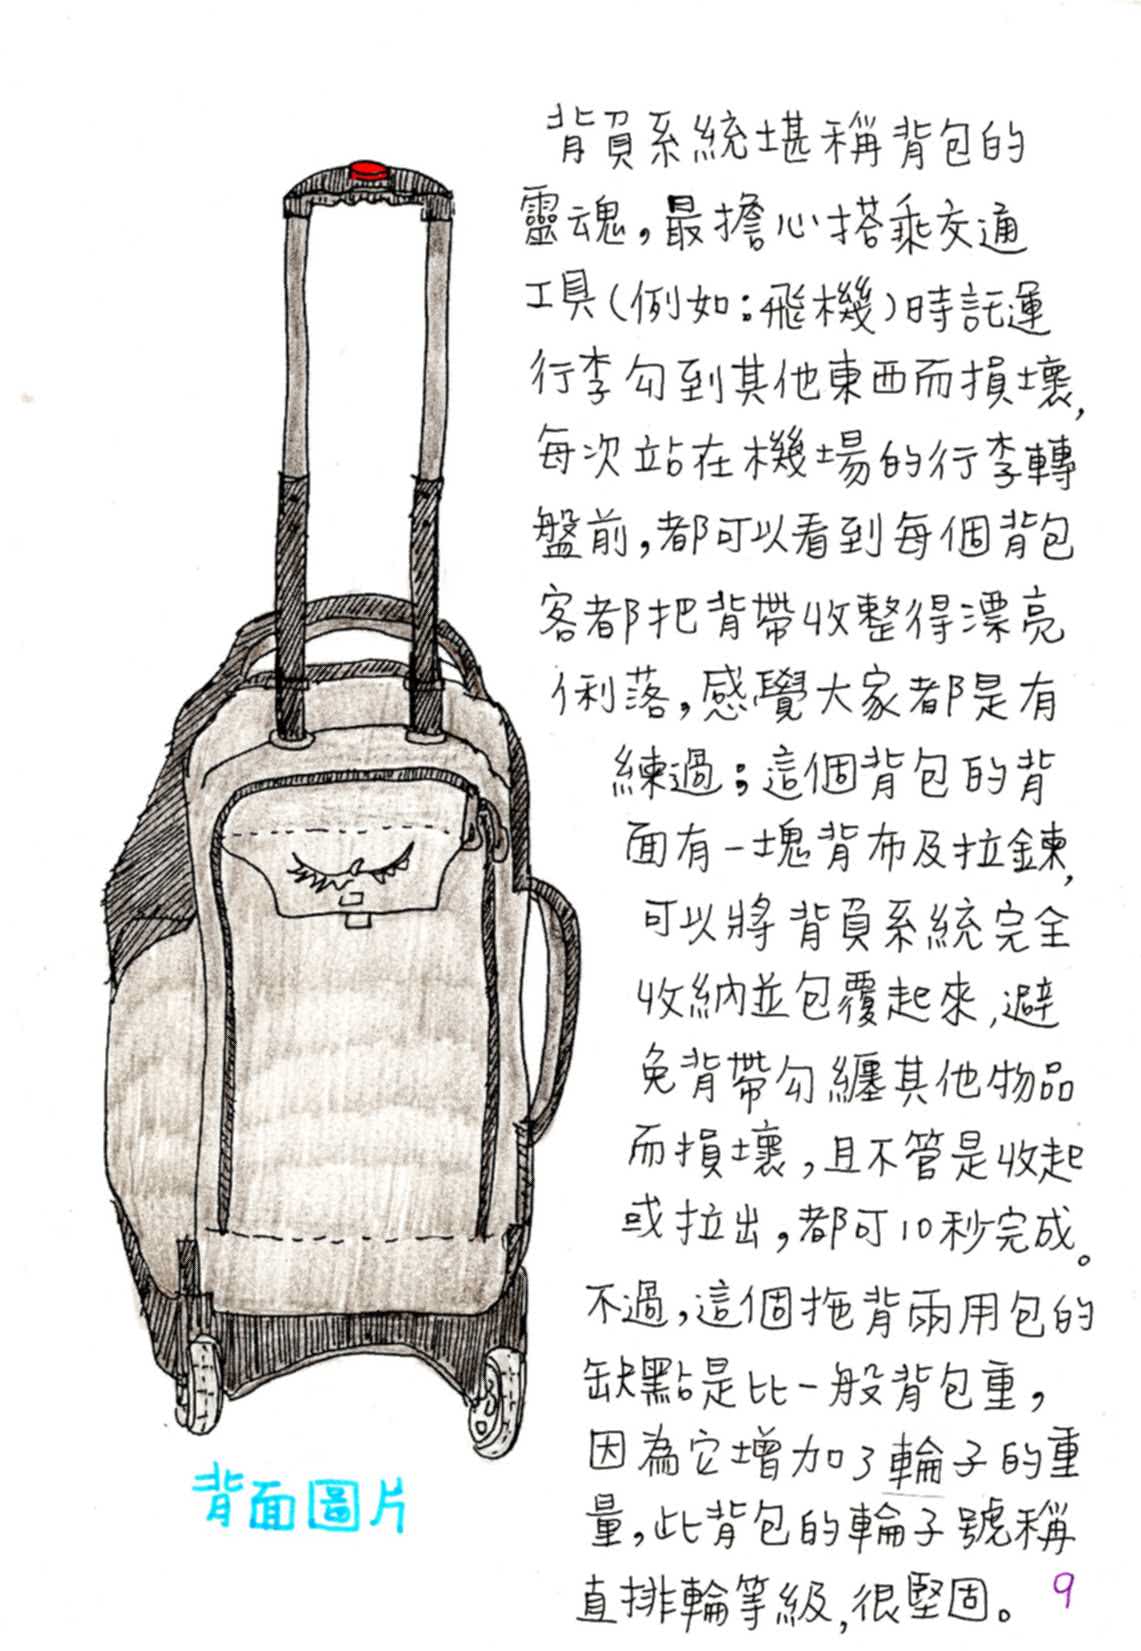 Peiyu的手繪自助旅行背包